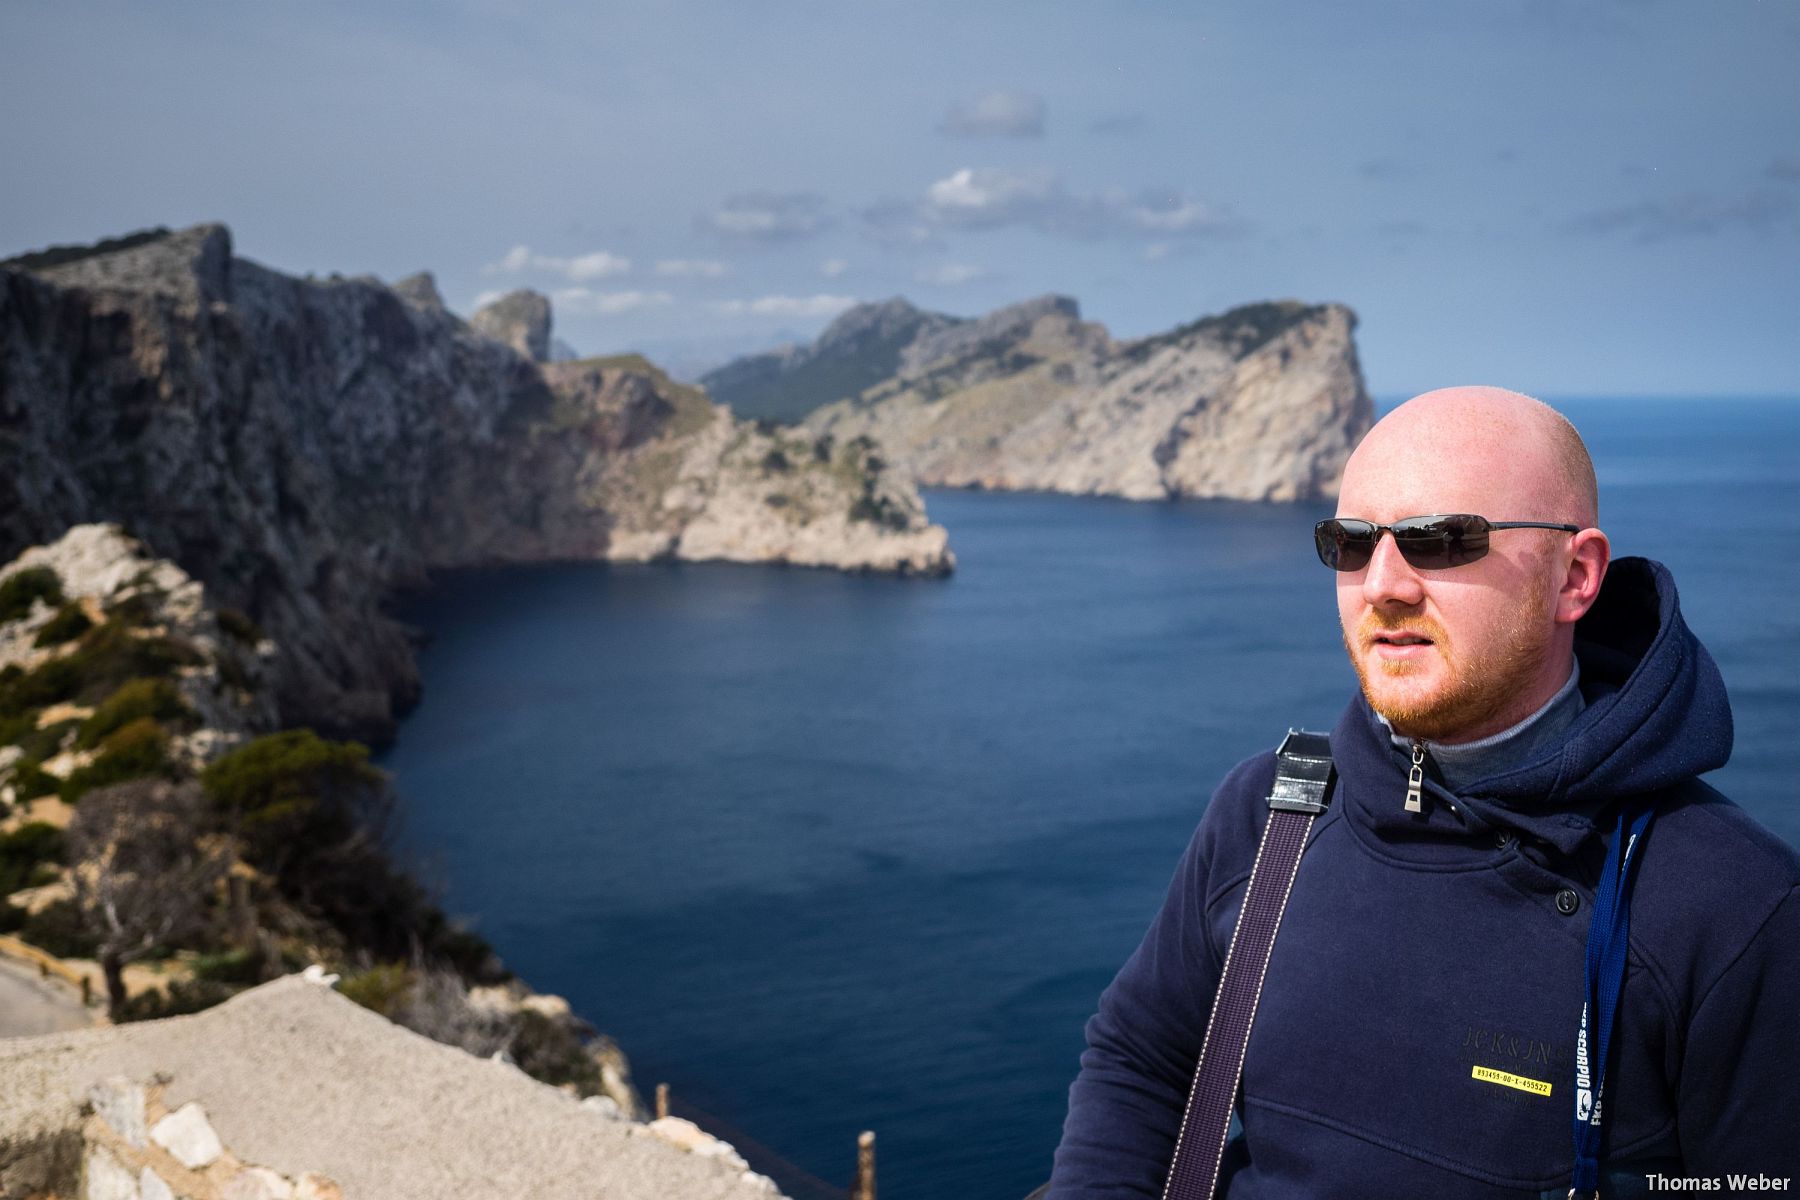 Fotograf Thomas Weber aus Oldenburg: Motorradtour und Fototour über die balearische Insel Mallorca 2015